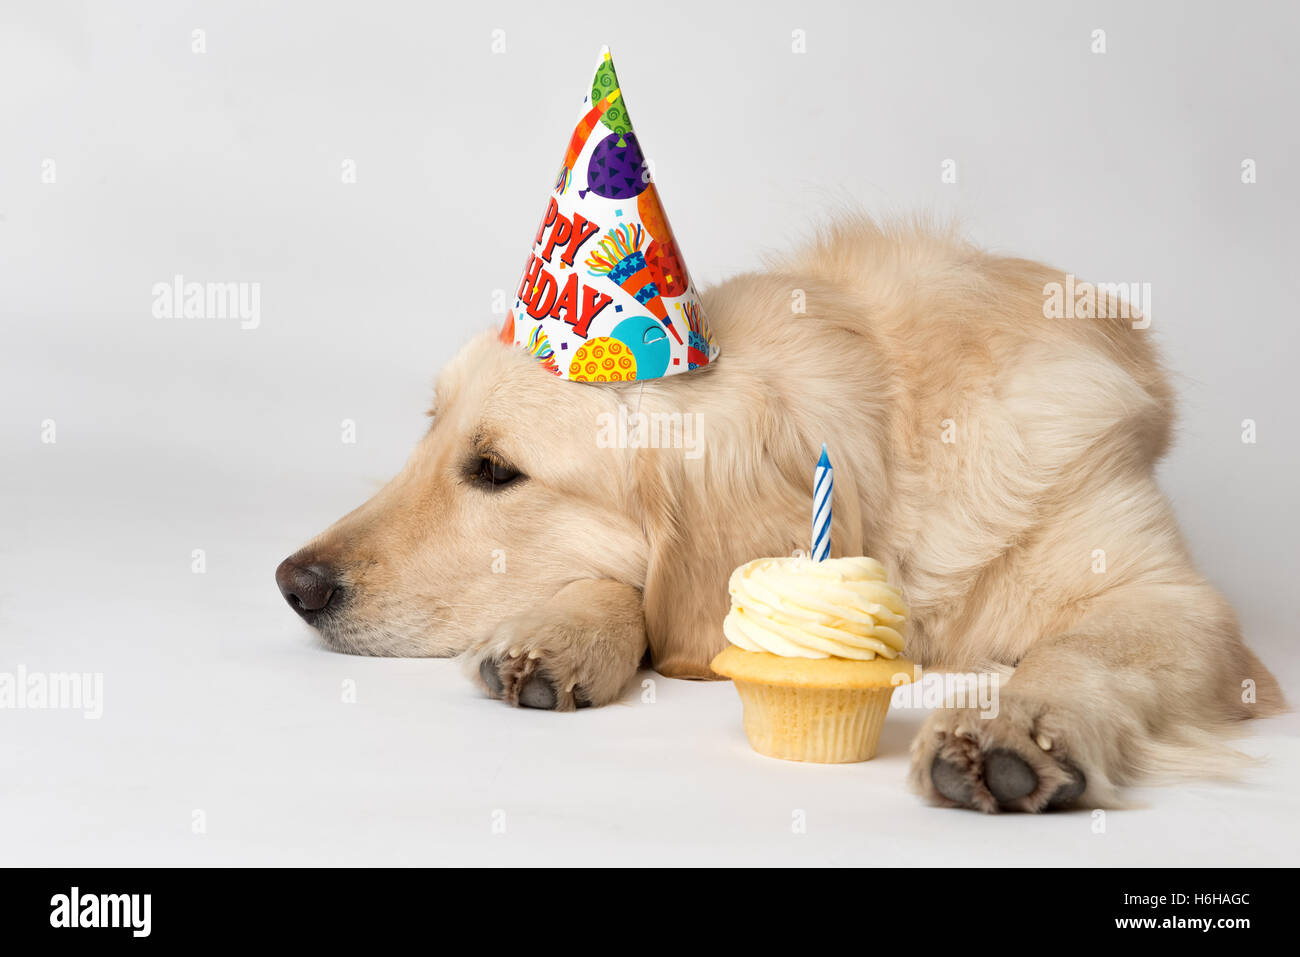 Anniversaire chien avec party hat et semble peu impressionné par cupcake son parti. Tourné sur blanc. Chien Golden Retriever est l'anglais. Banque D'Images